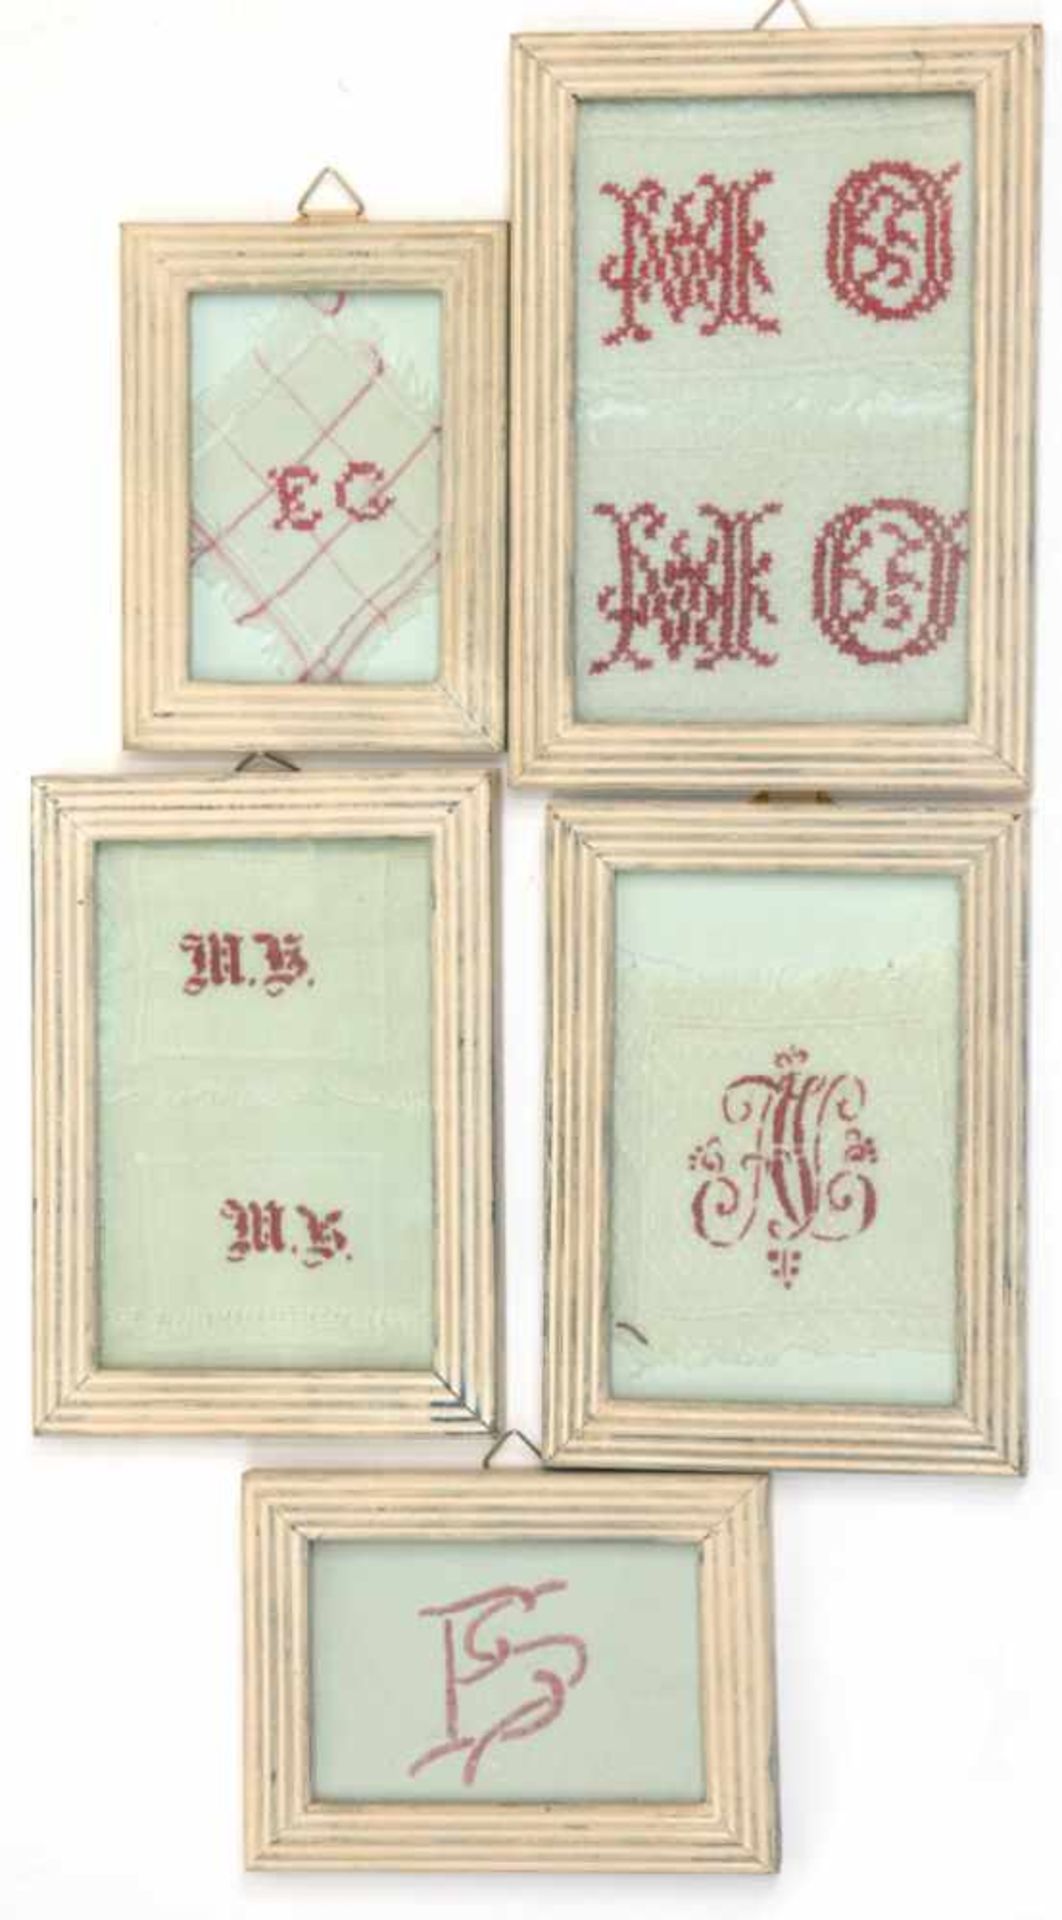 5 Stickvorlagen Buchstaben und Monogramme, um 1900, von 5,5x9 cm bis 14x9 cm hinter Glasund Rahmen